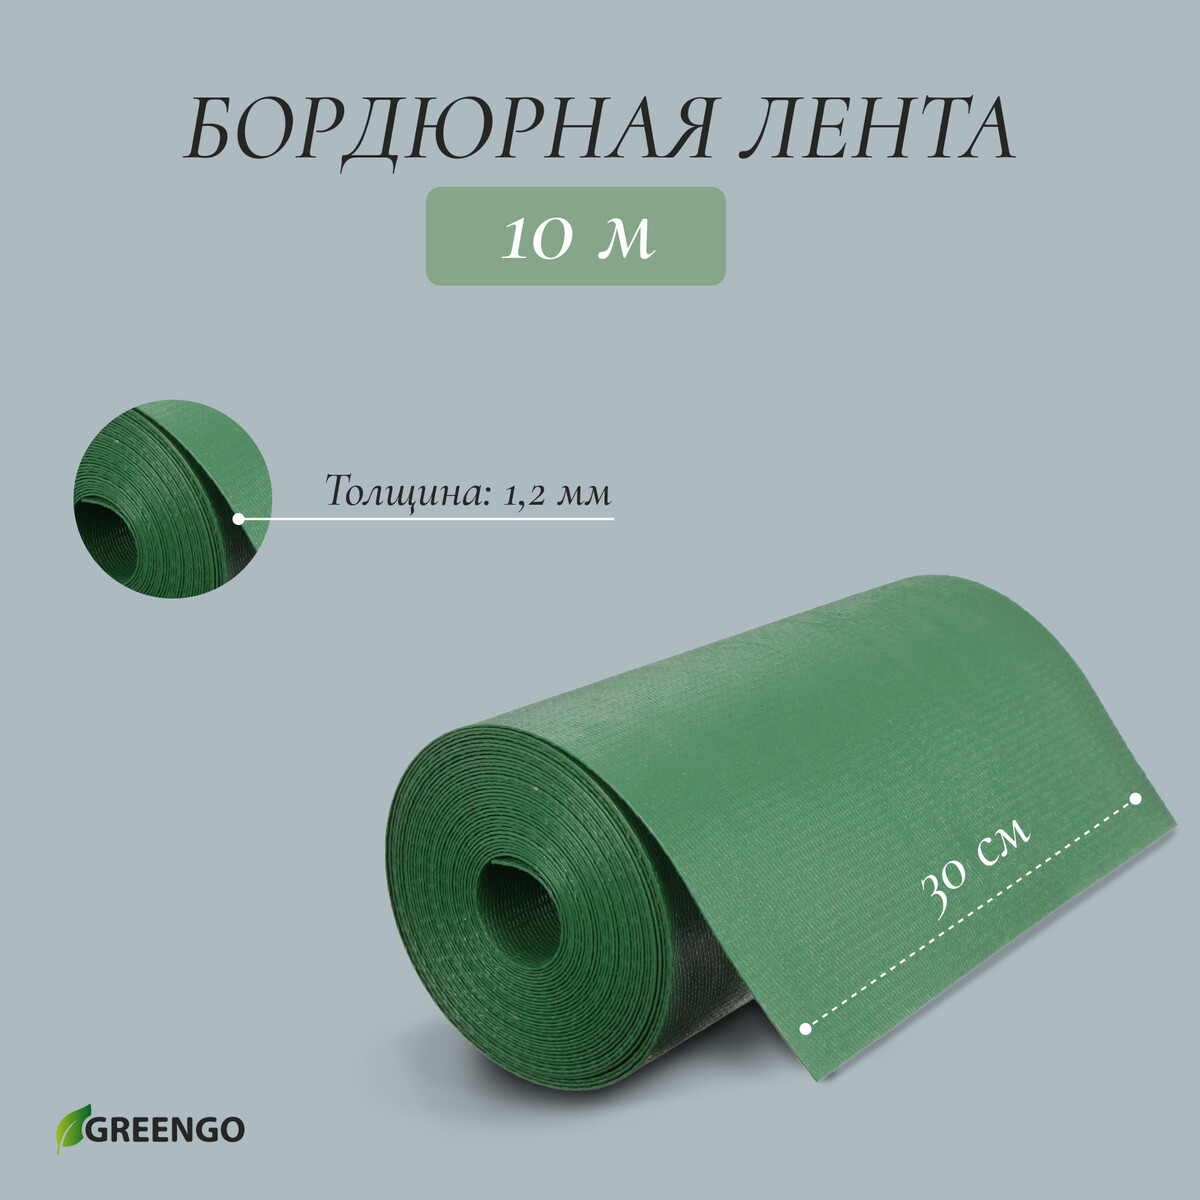 Лента бордюрная, 0.3 × 10 м, толщина 1.2 мм, пластиковая, зеленая, greengo лента бордюрная 0 1 × 10 м толщина 1 2 мм пластиковая коричневая greengo